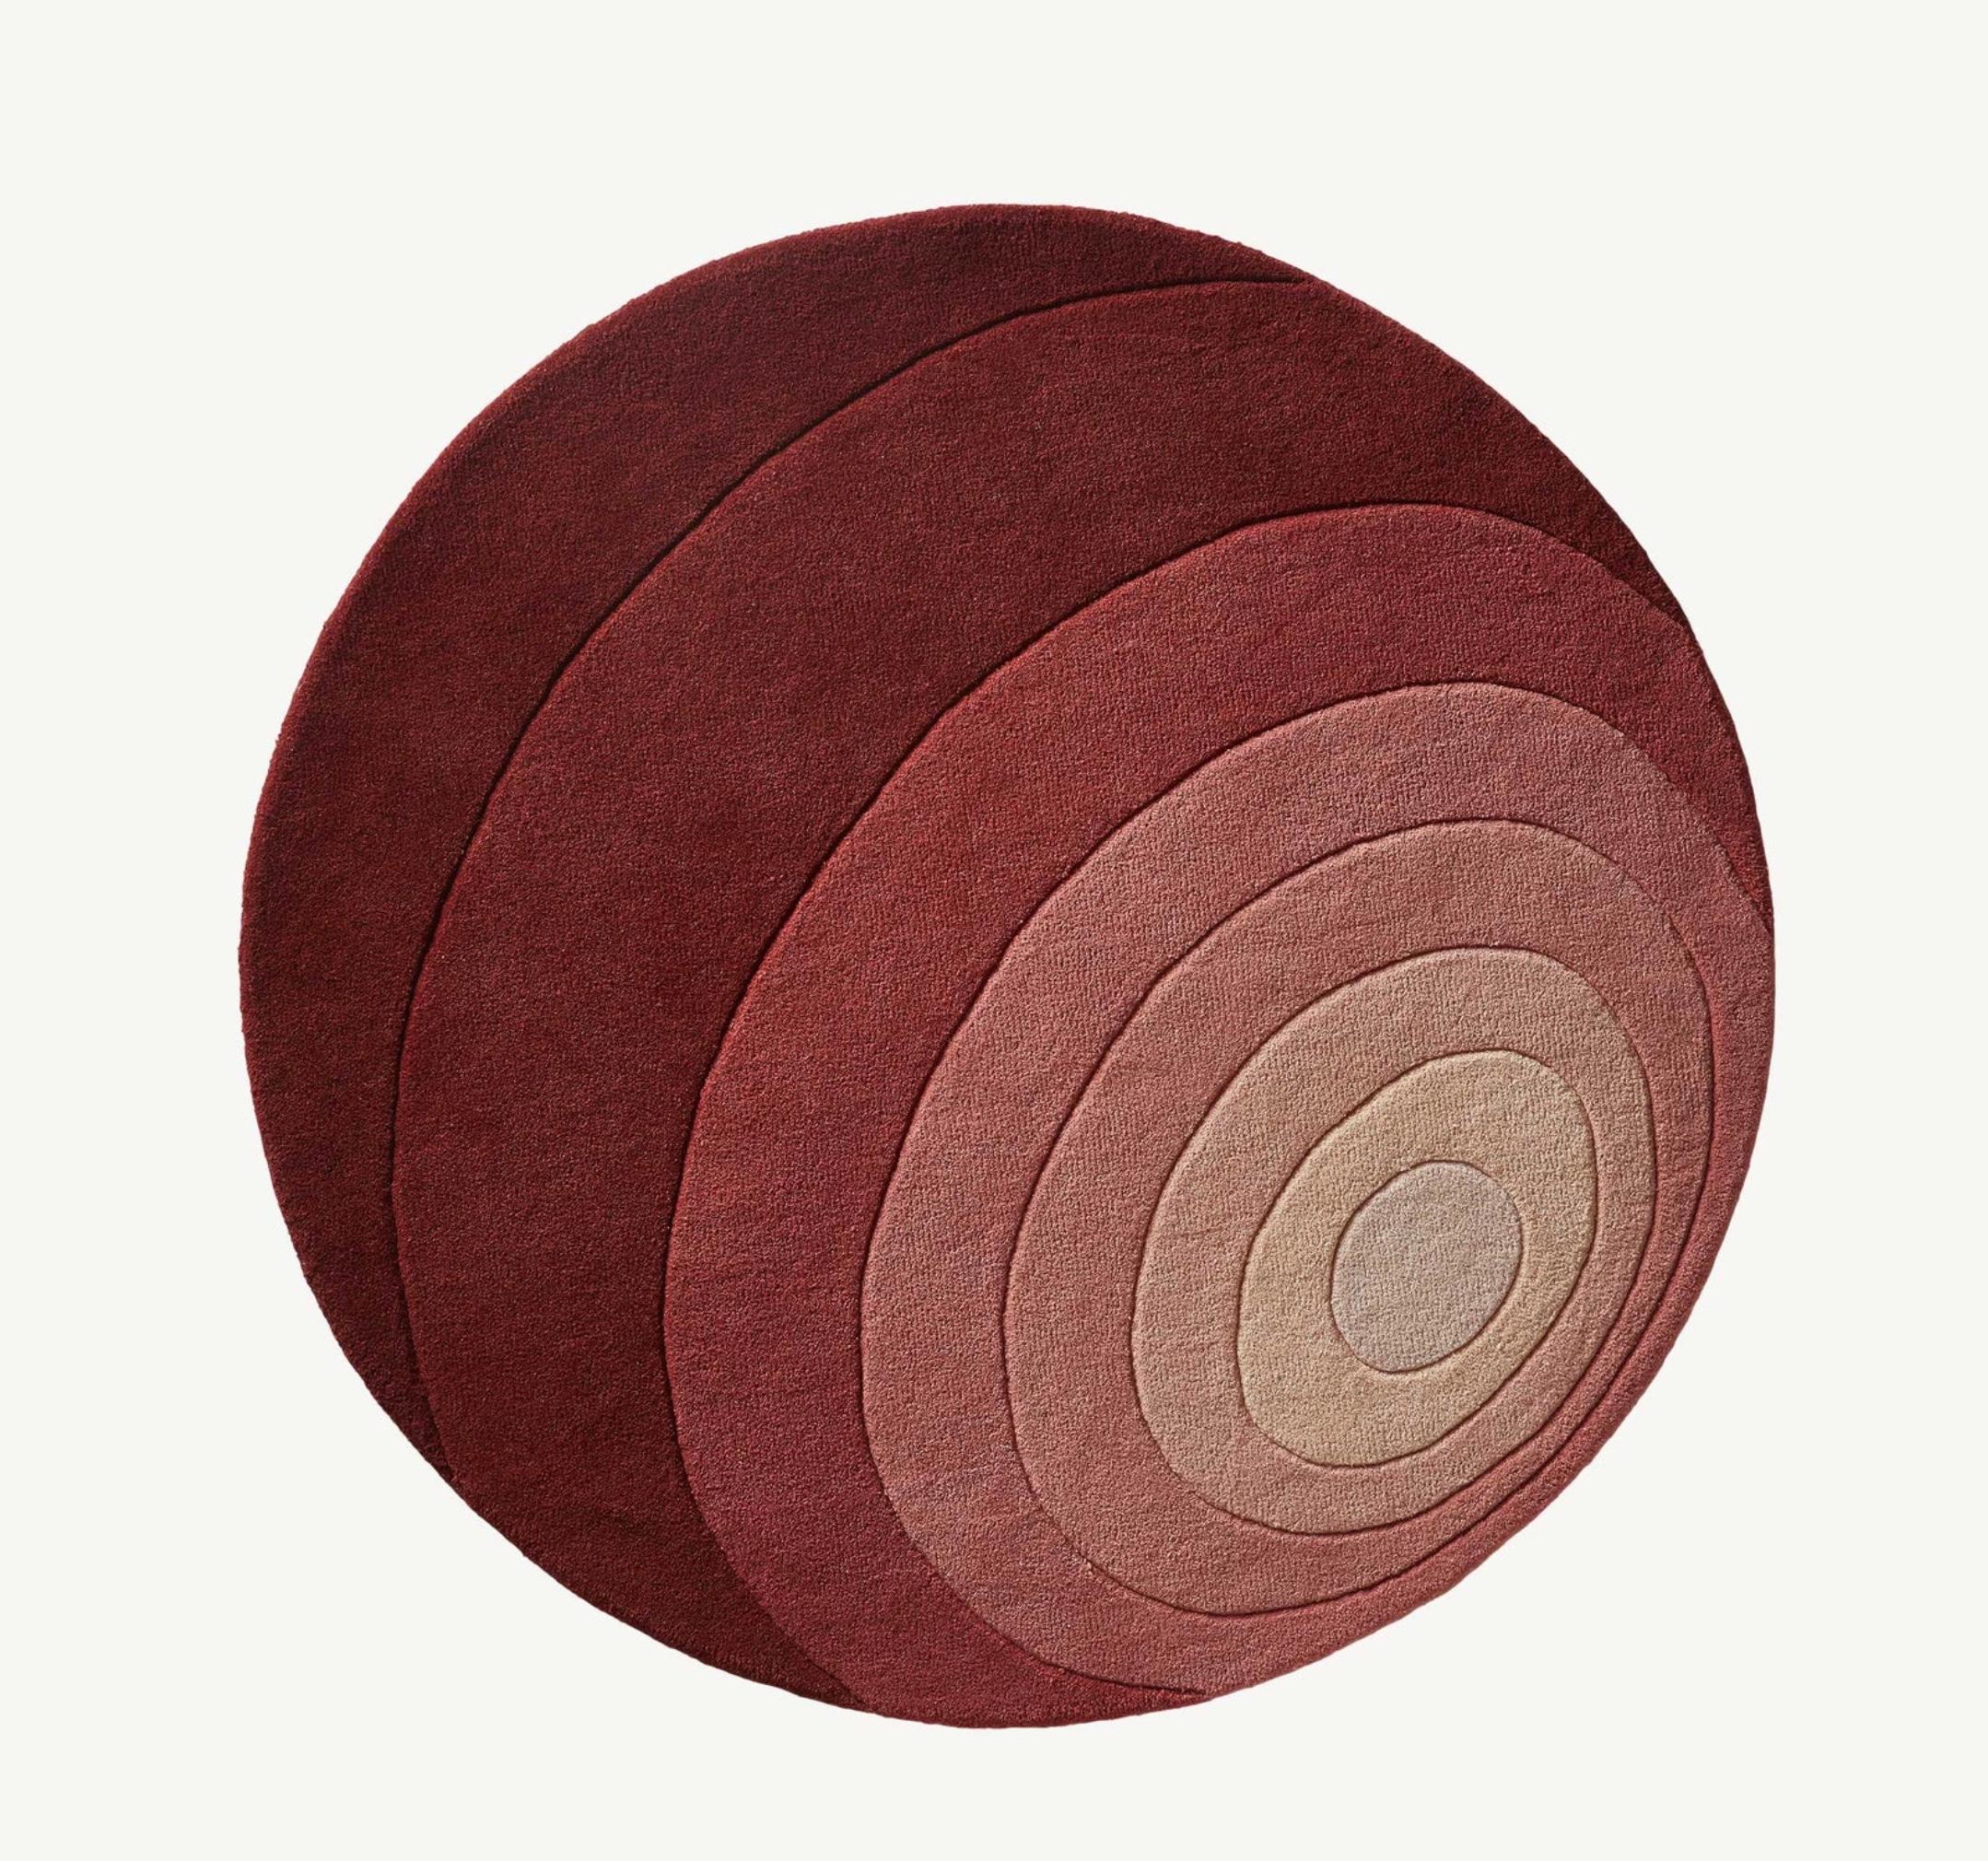 Verner Panton 'Luna' Teppich 120cm von Verpan. Aktuelle Produktion.

Teppiche verleihen einem Raum nicht nur eine skulpturale Note, sondern dienen auch dazu, die Dimensionen des Raums zu betonen und/oder zu verändern. Alle Verpan-Teppiche werden aus